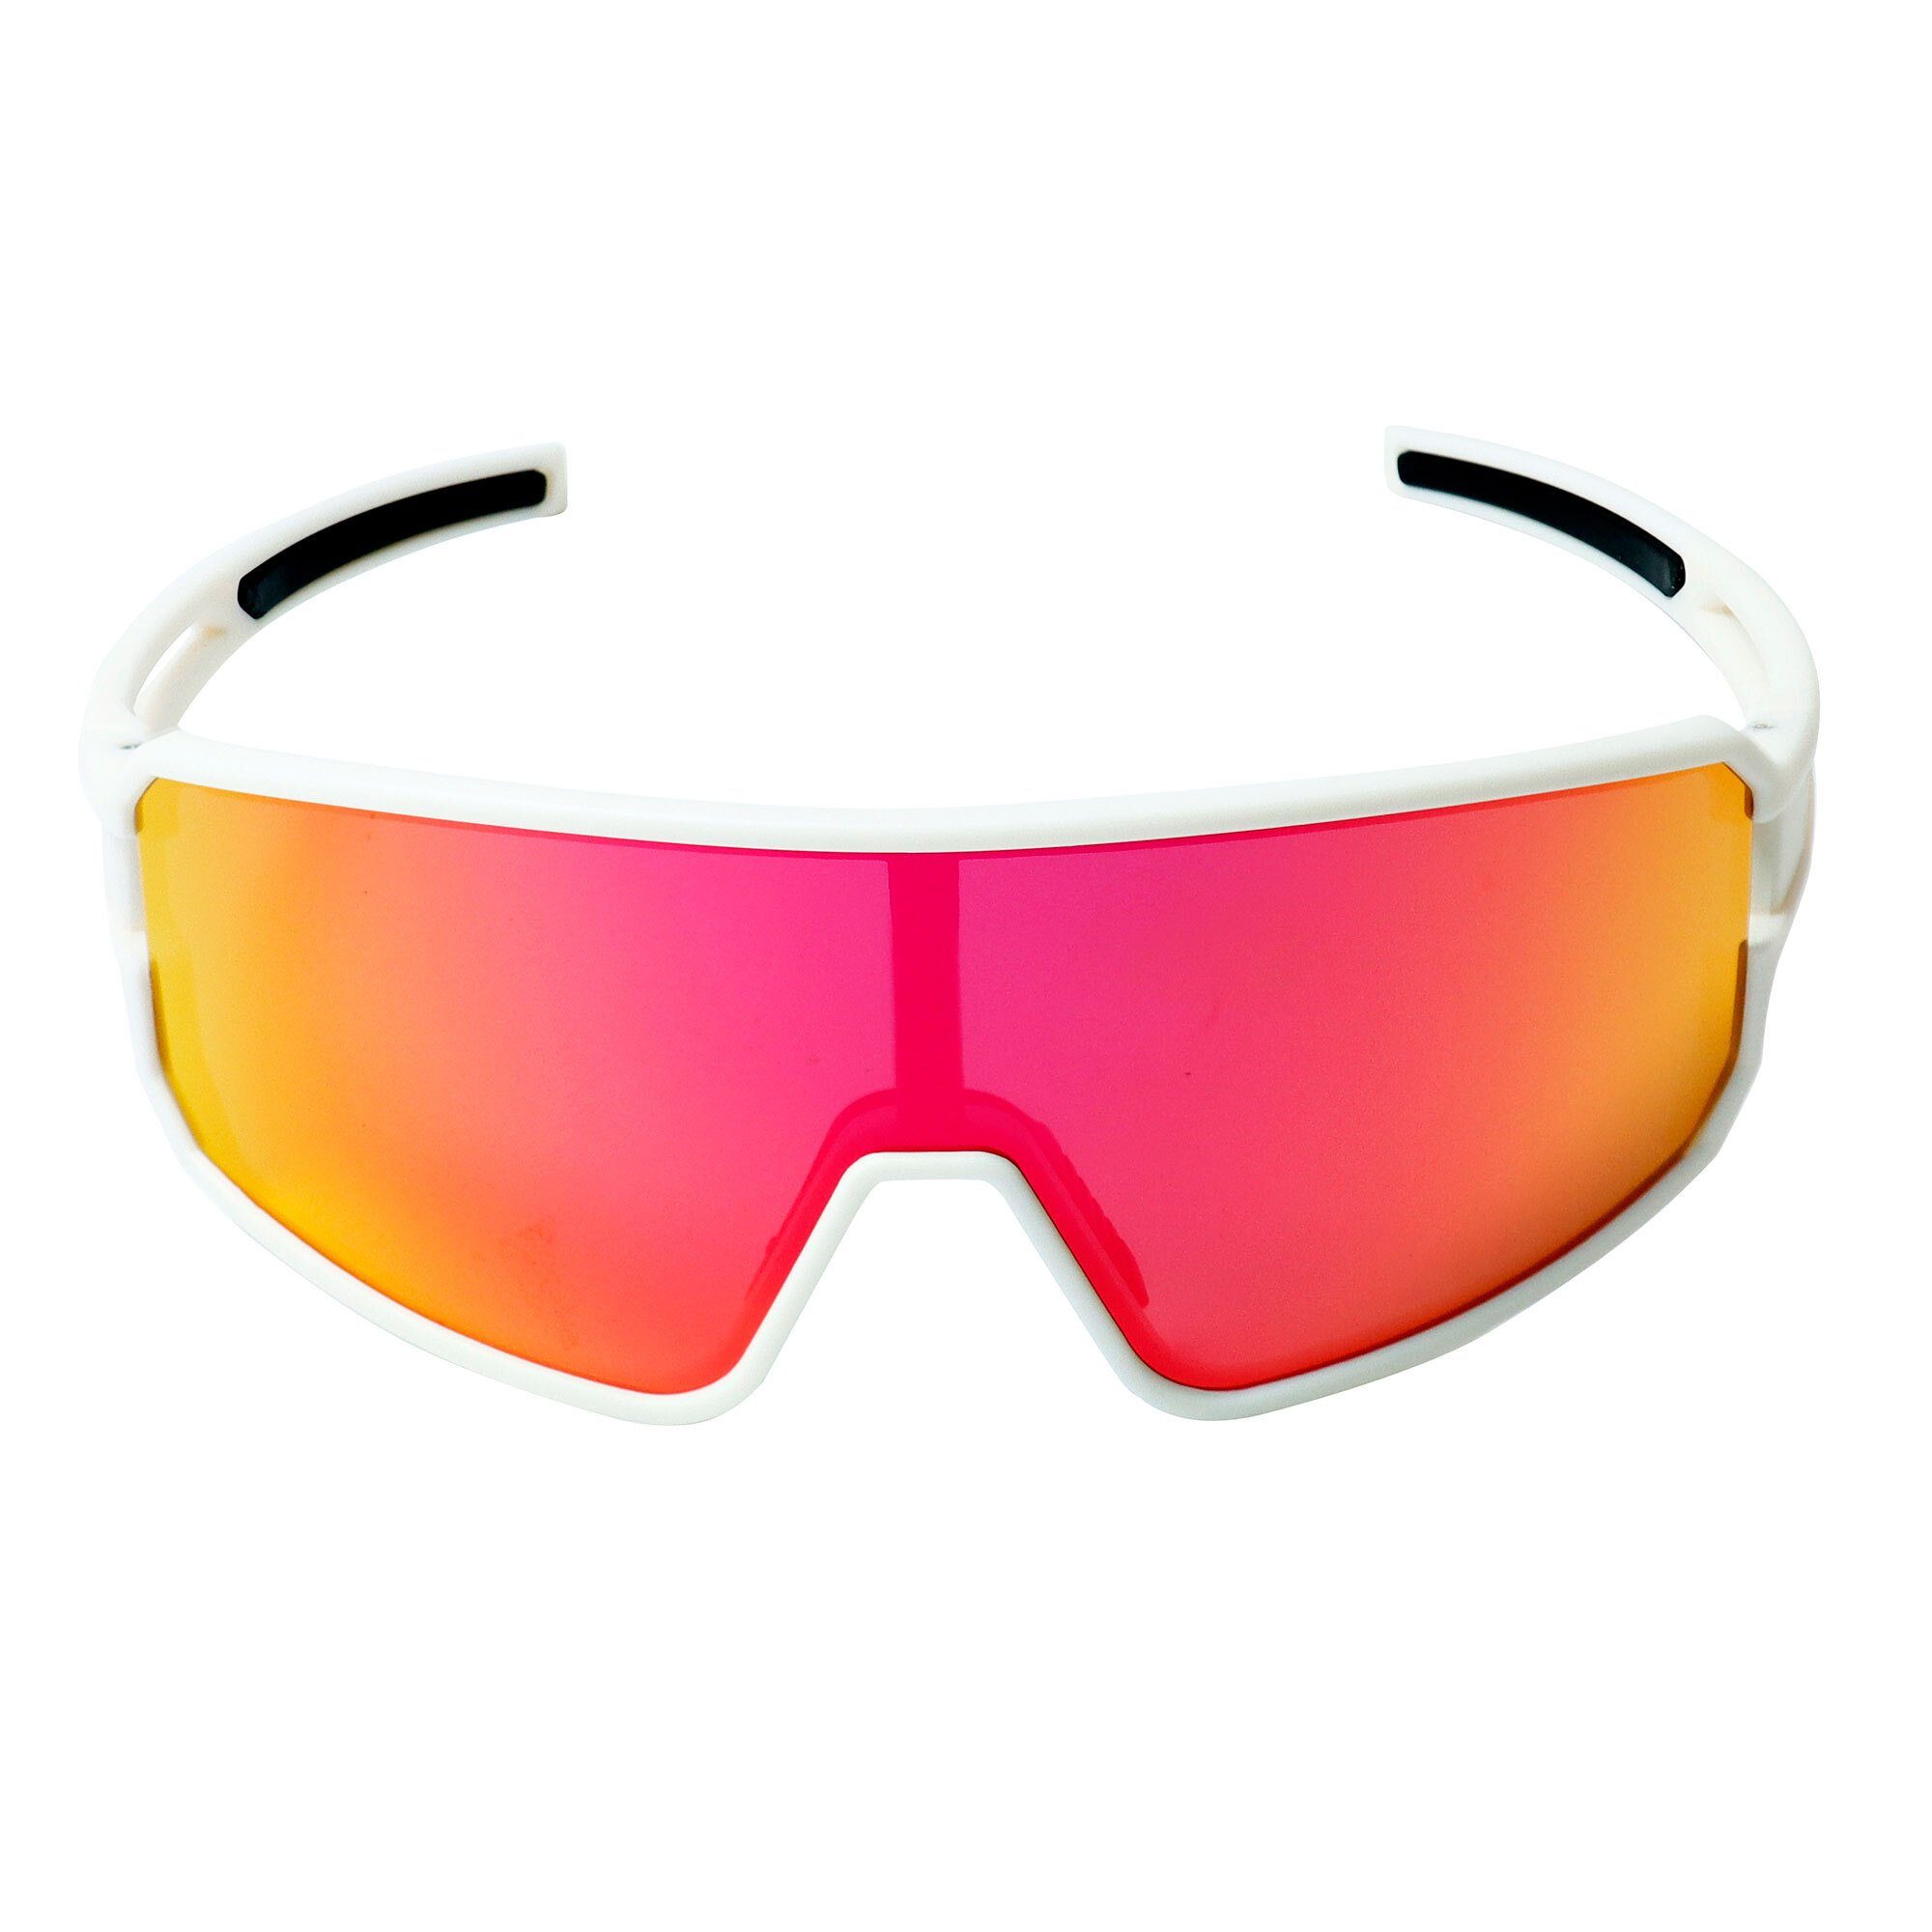 creme white/pink, Sportbrille YEAZ Schutz Sicht bei optimierter sport-sonnenbrille SUNWAVE Guter